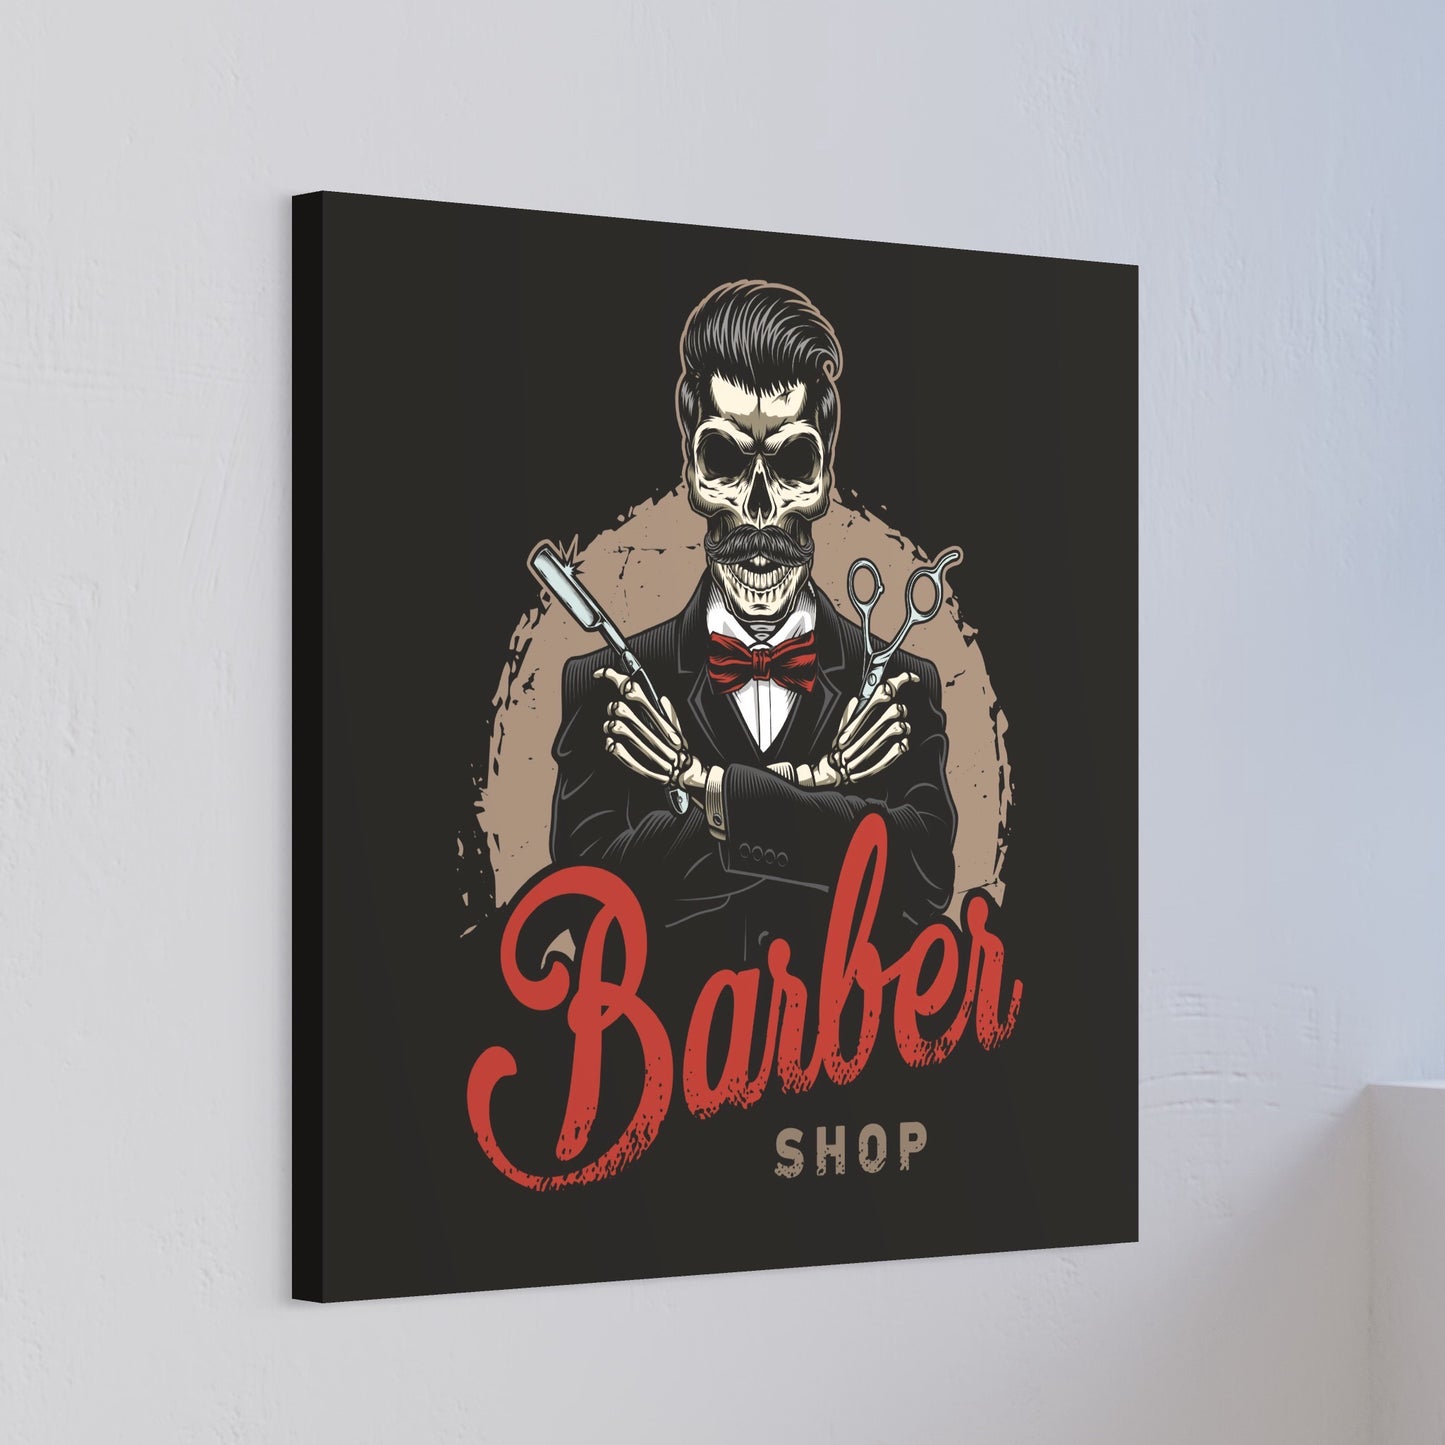 Barber Shop, Calavera II